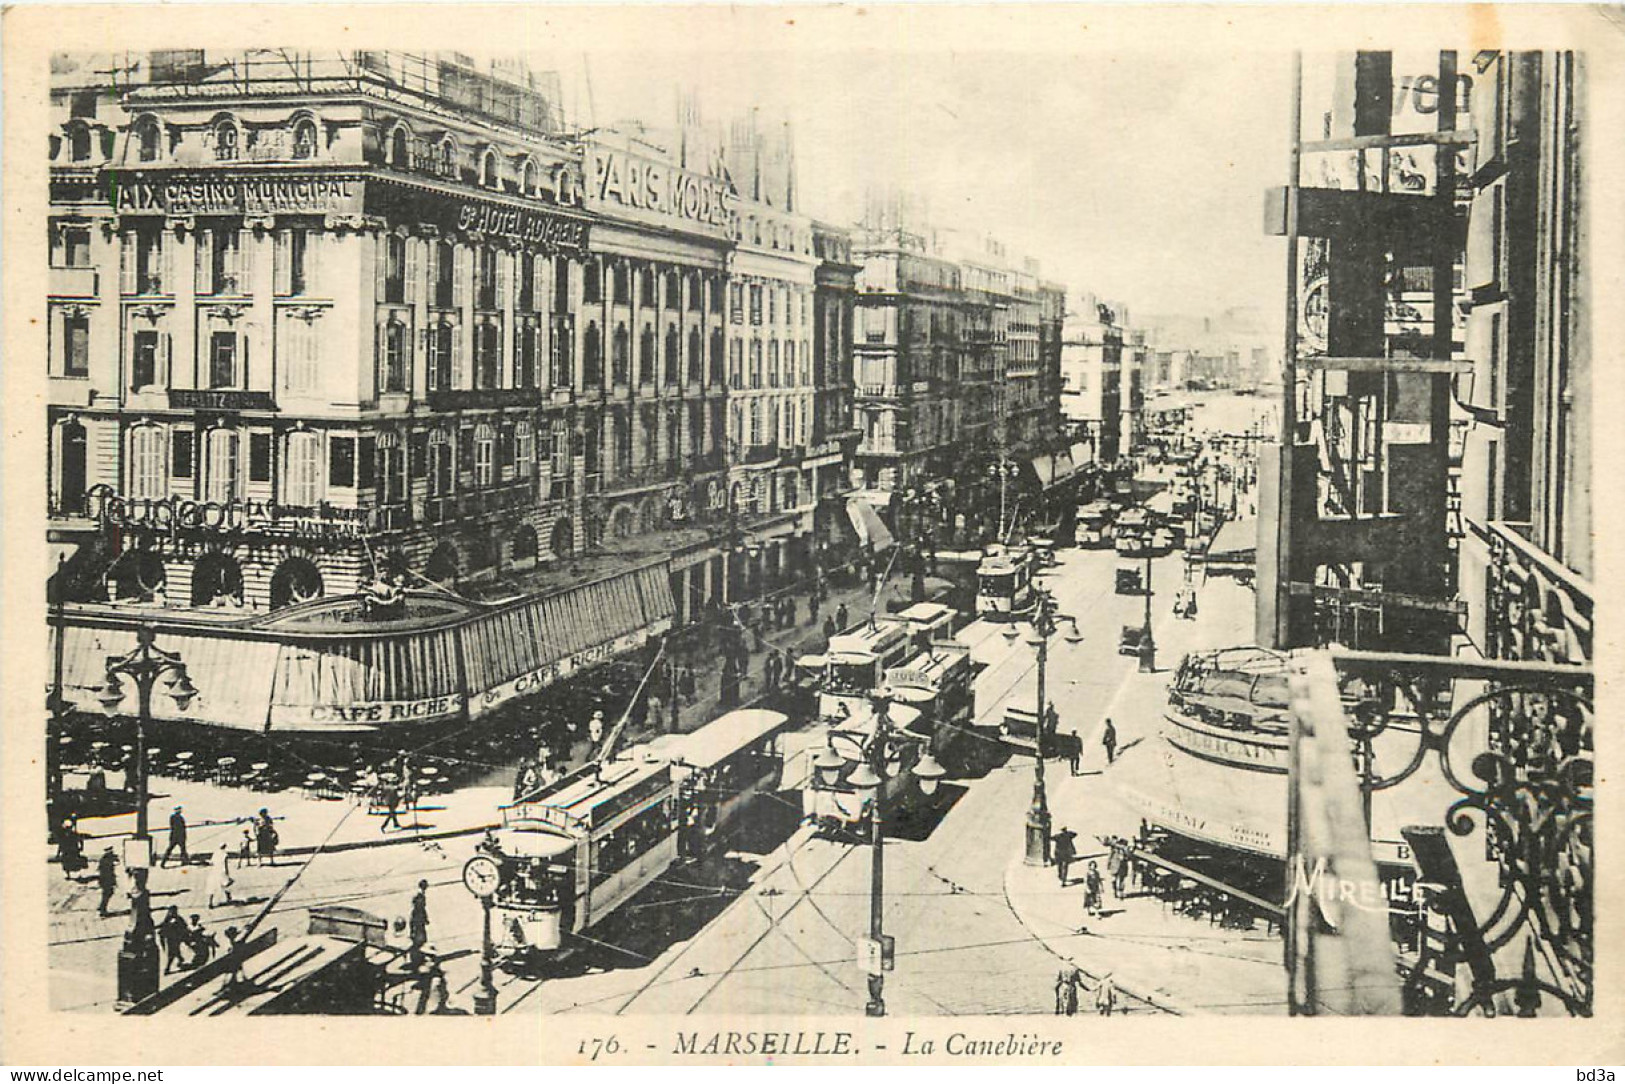 13 - MARSEILLE - LA CANEBIERE - The Canebière, City Centre